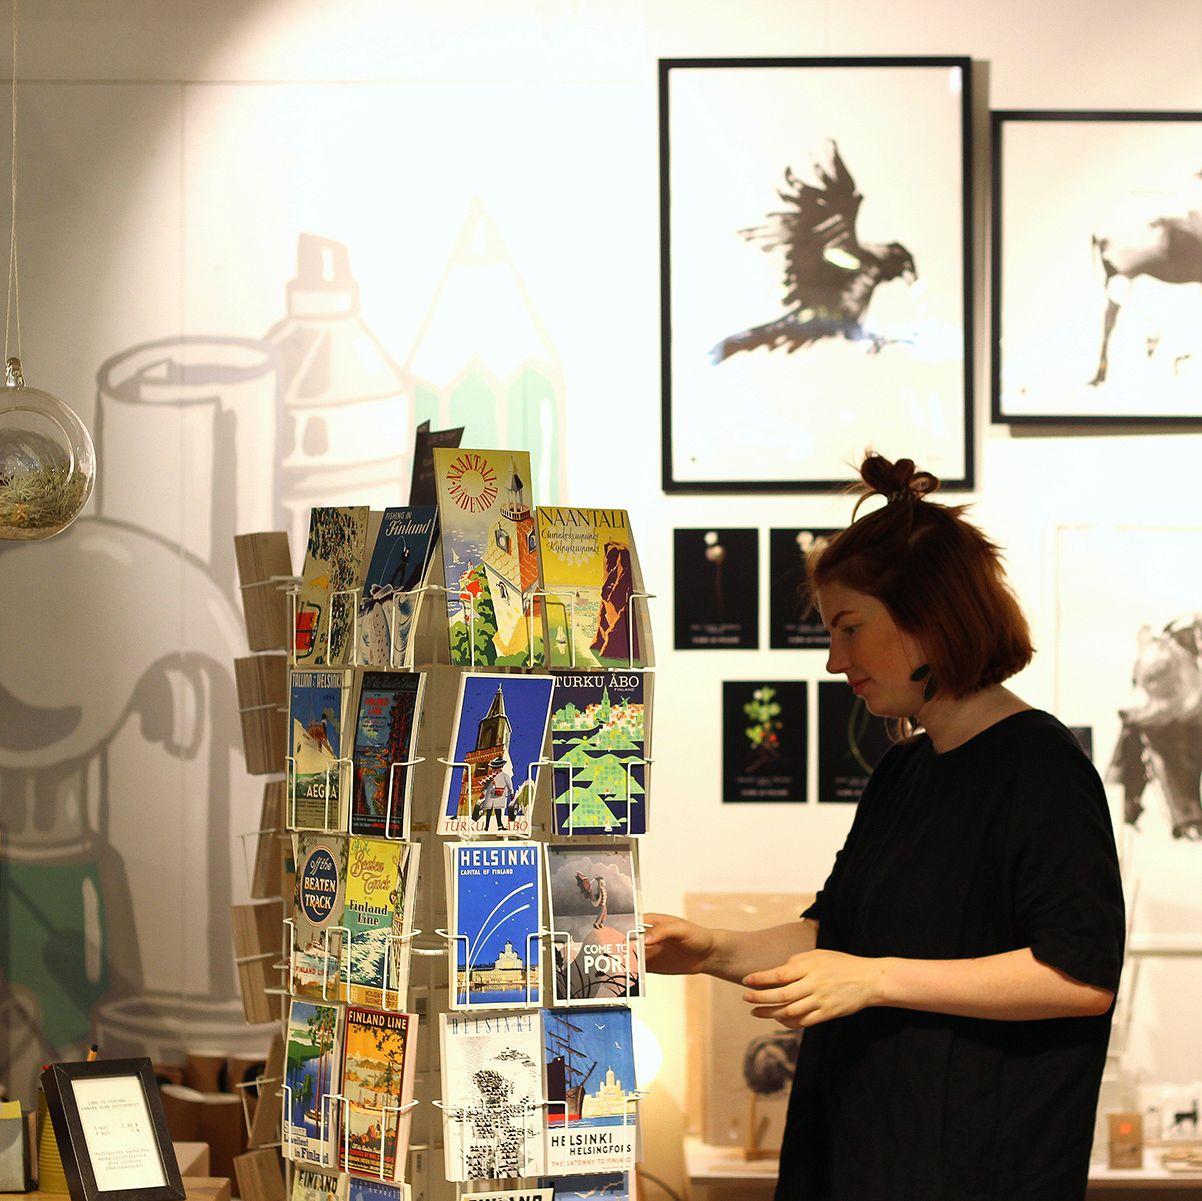 En shoppare tittar igenom vykorten som visas på PUF Design.